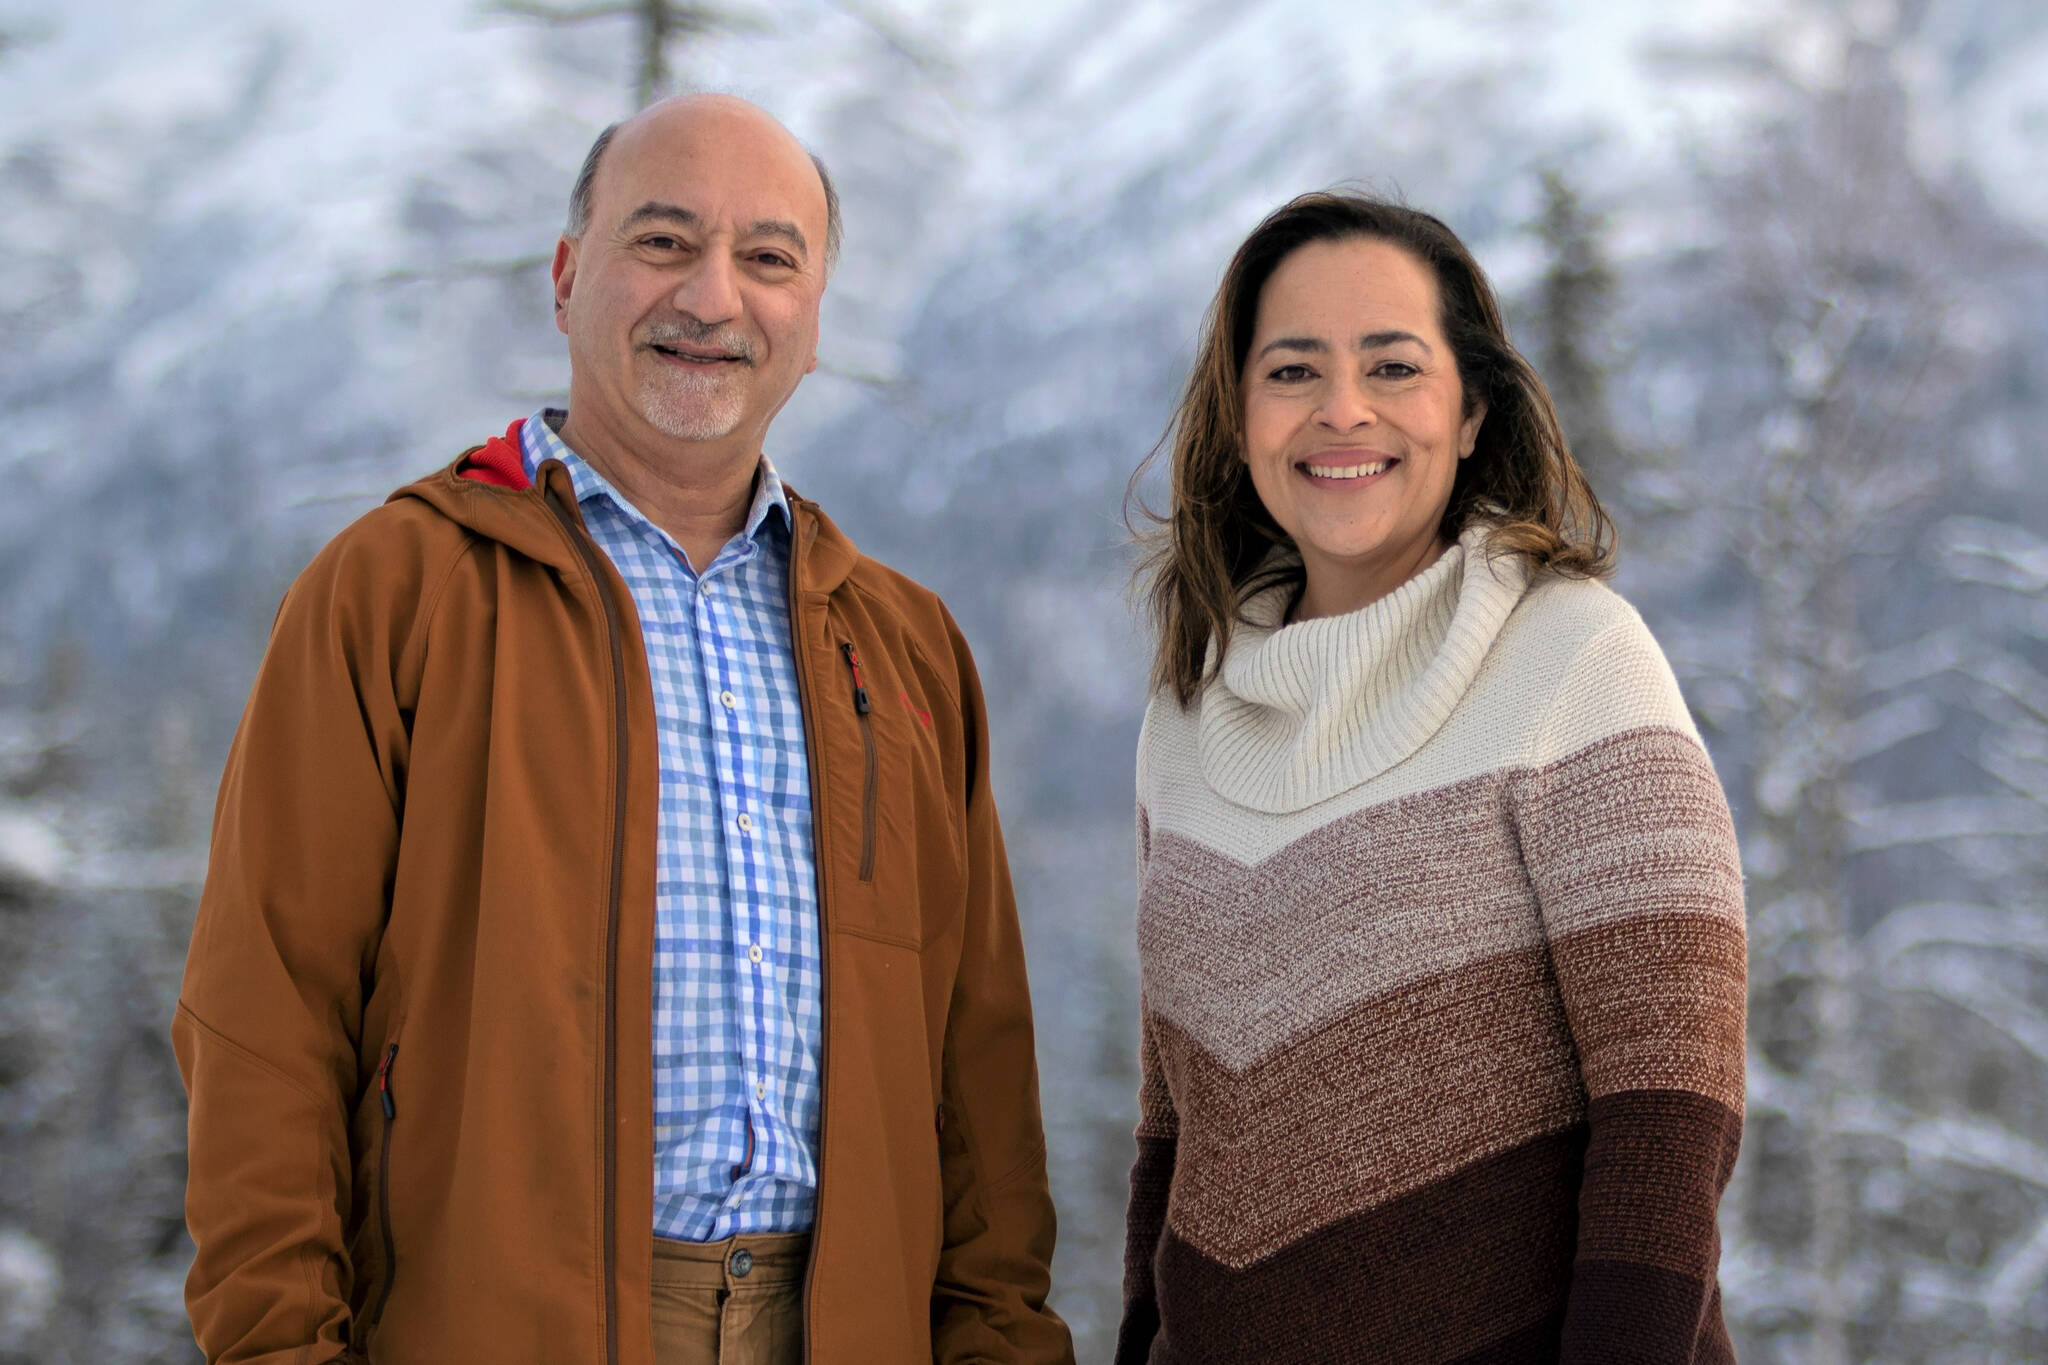 Les Gara, left, is running for Alaska governor; Jessica Cook is running for lieutenant governor in the 2022 gubernatorial race. (Photo provided)